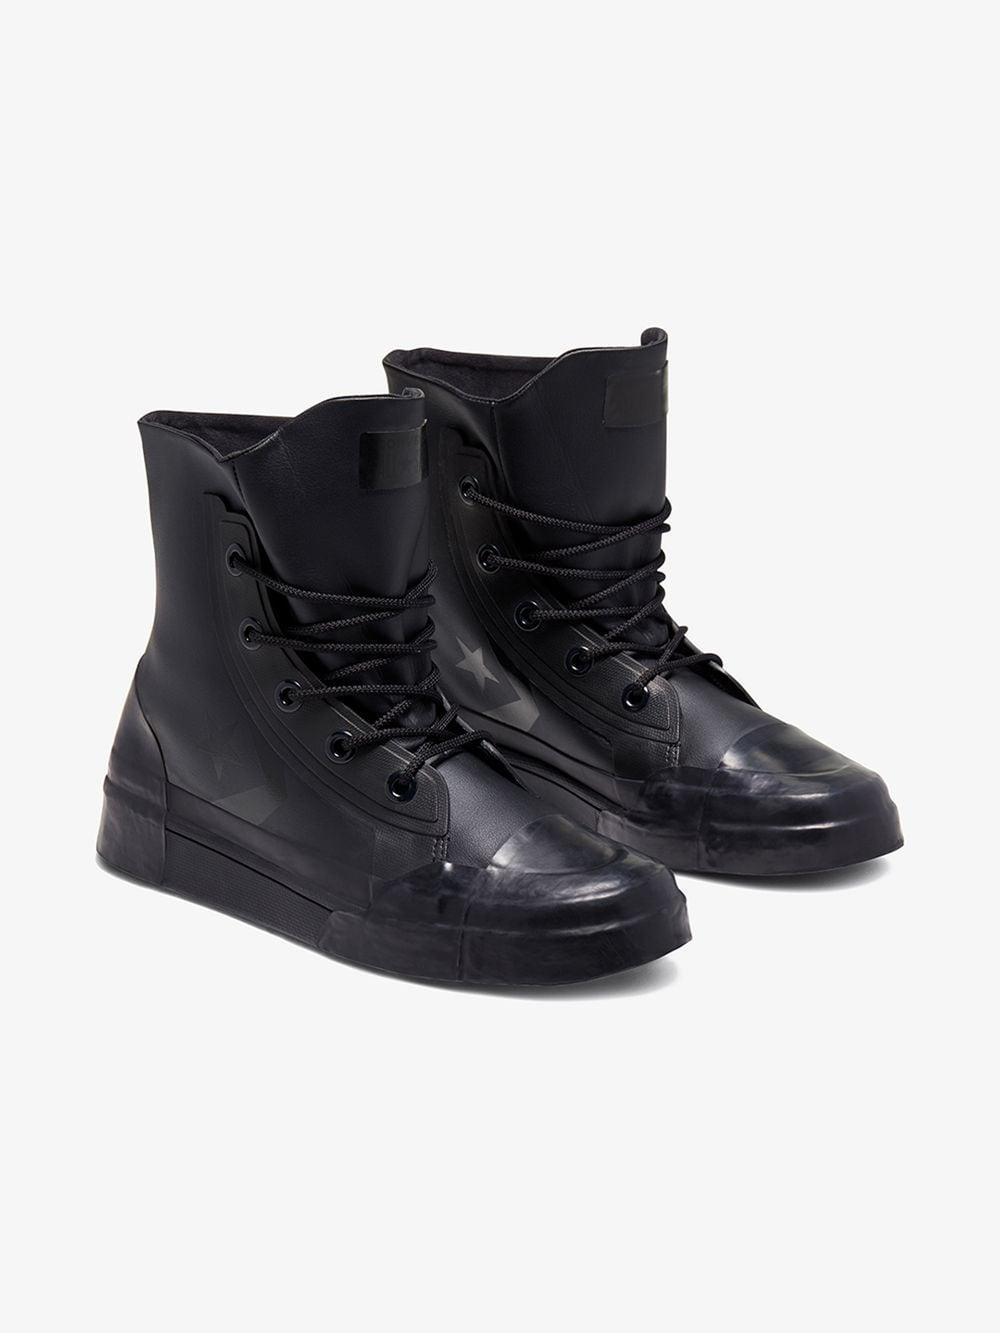 【破格】Converse×Ambush Pro Leather Hi Black スニーカー 靴 メンズ 【使い勝手の良い】